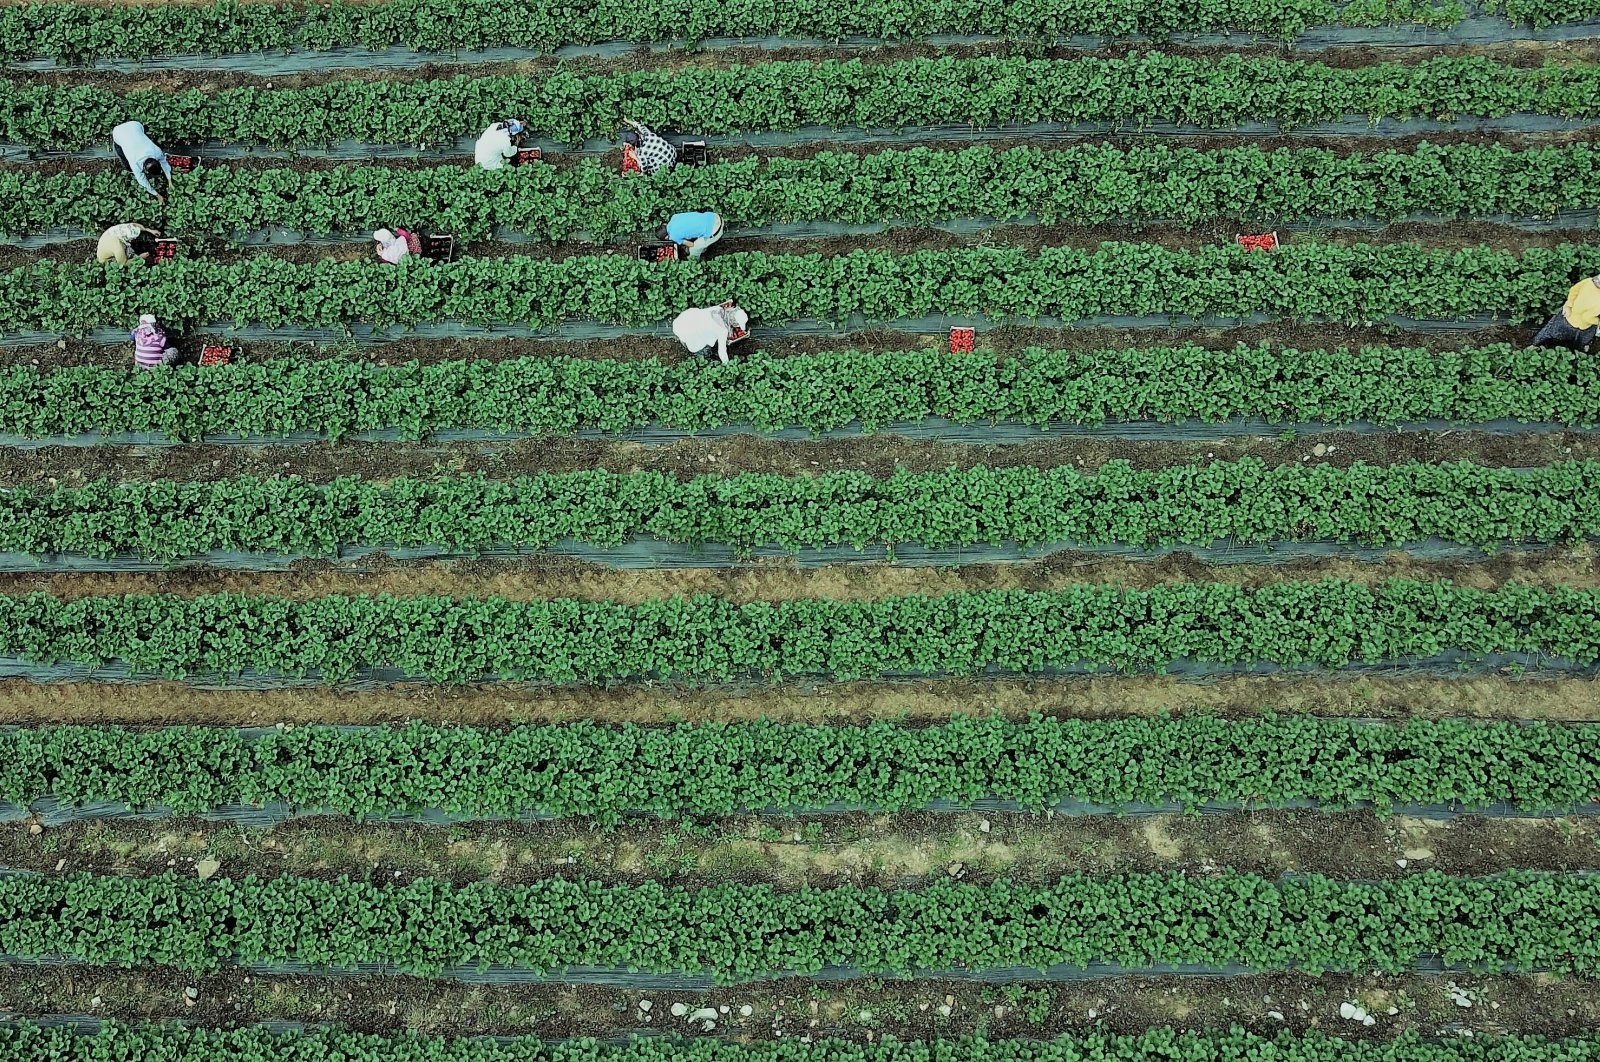 Dari pertanian ke meja: Startup Agritech membuka jalan bagi rantai makanan sehat